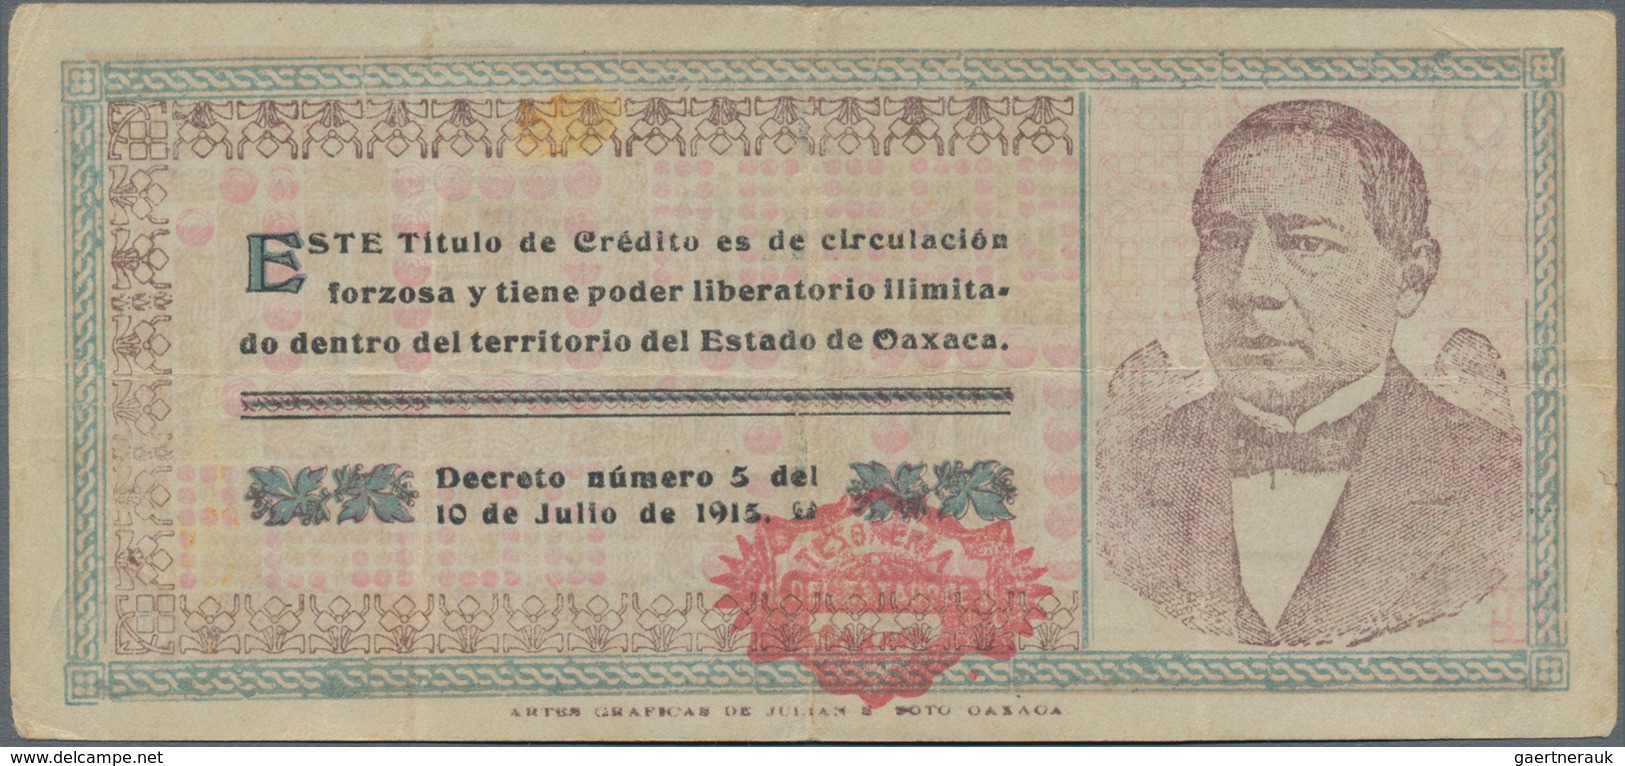 Mexico: Tesorería General Del Estado De Oaxaca 10 Pesos 1915, P.S957a In About XF Condition. - Mexique